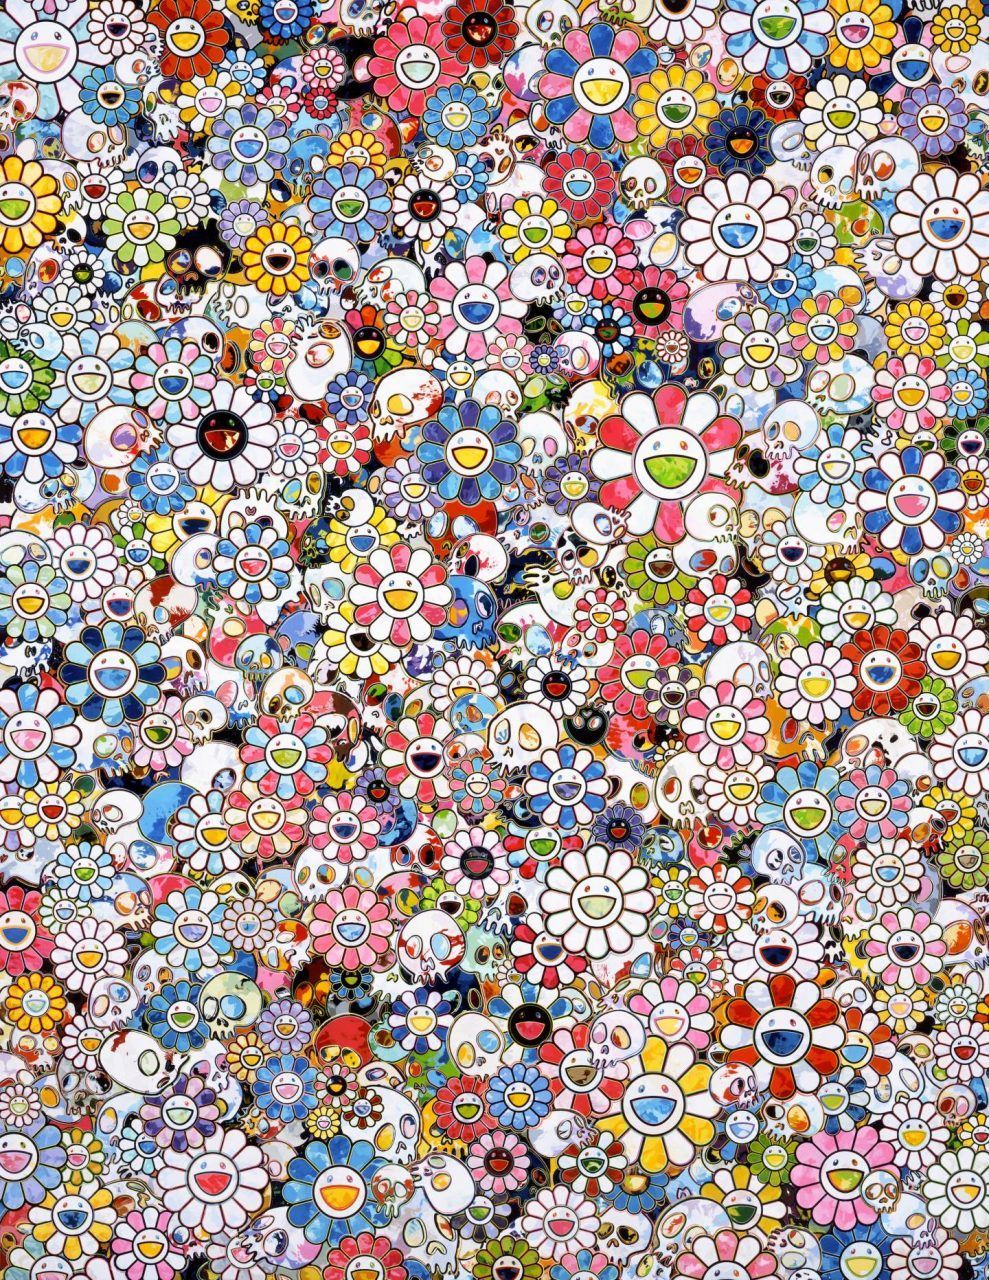 Takashi Murakami Singapore Exhibition: From Superflat to Bubblewrap. Takashi murakami, Takashi murakami art, Murakami flower